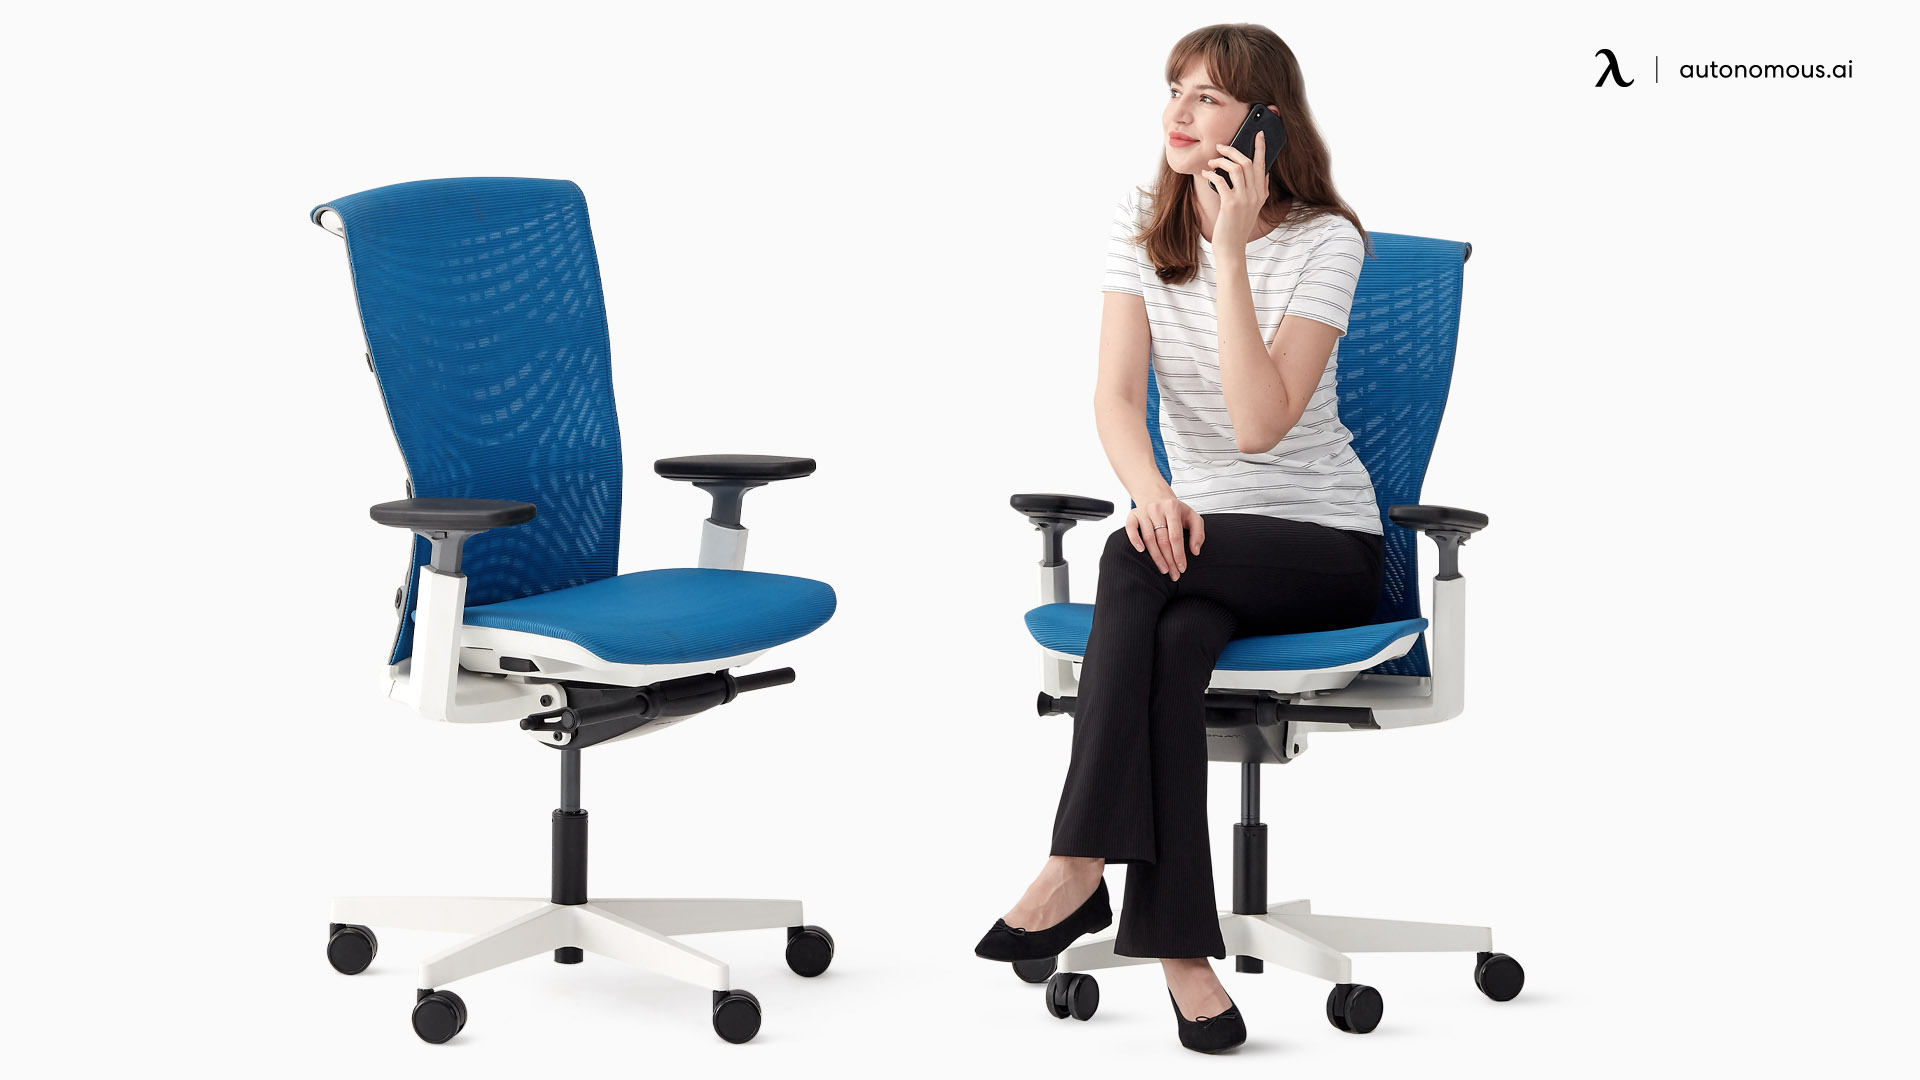 ErgoChair Pro+ adjustable office chair